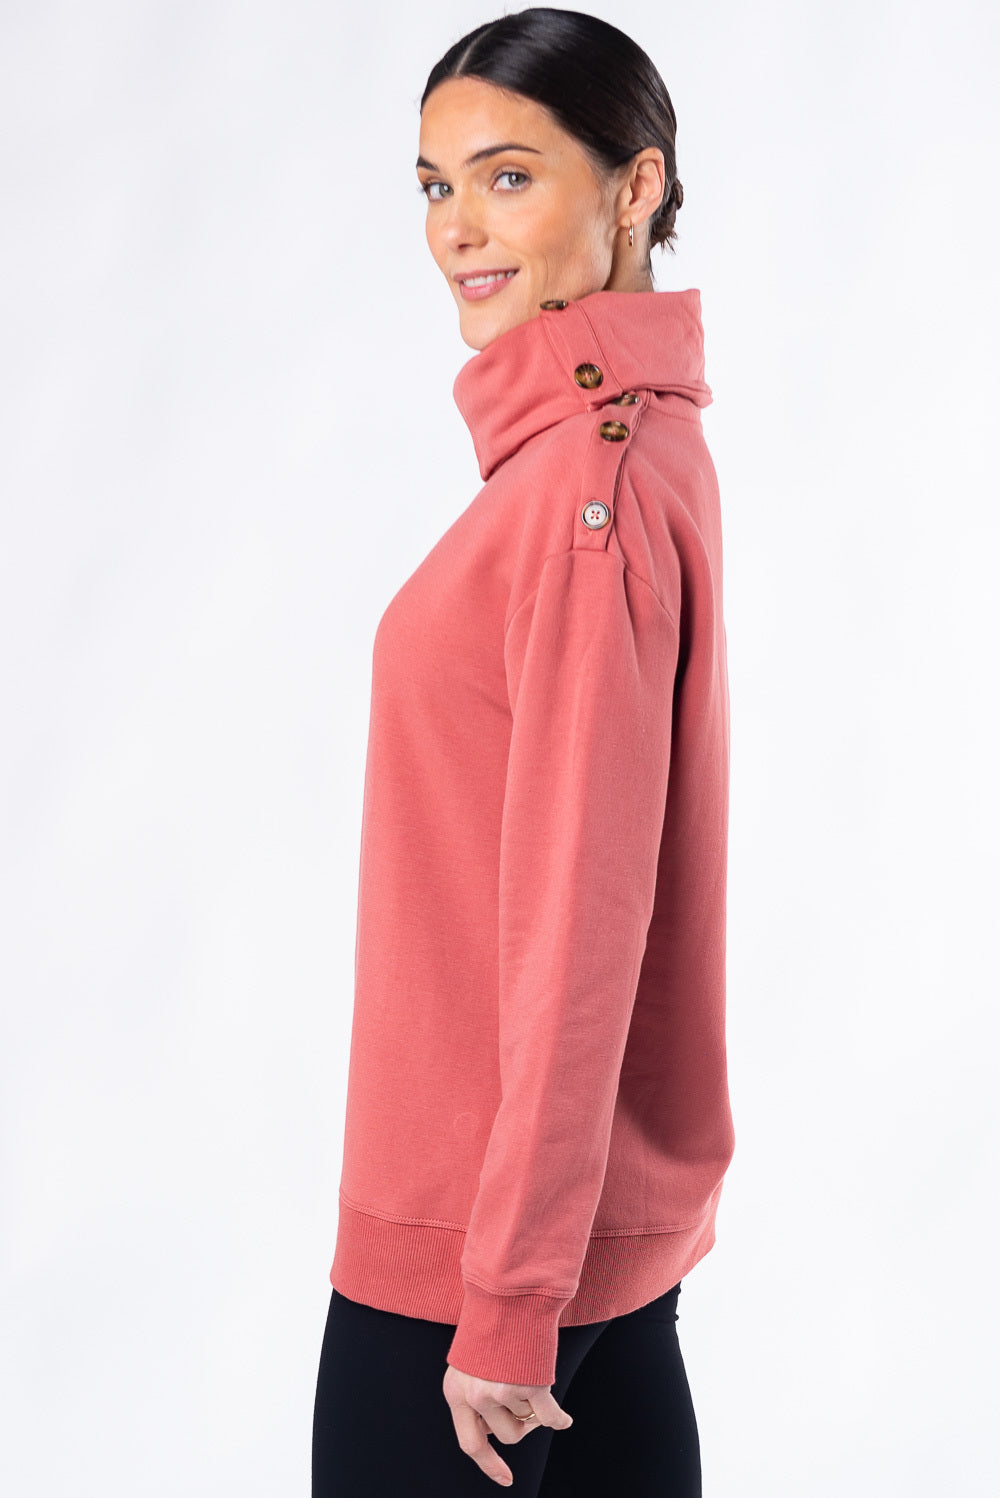 terrera womens desert pink bamboo sweater canada